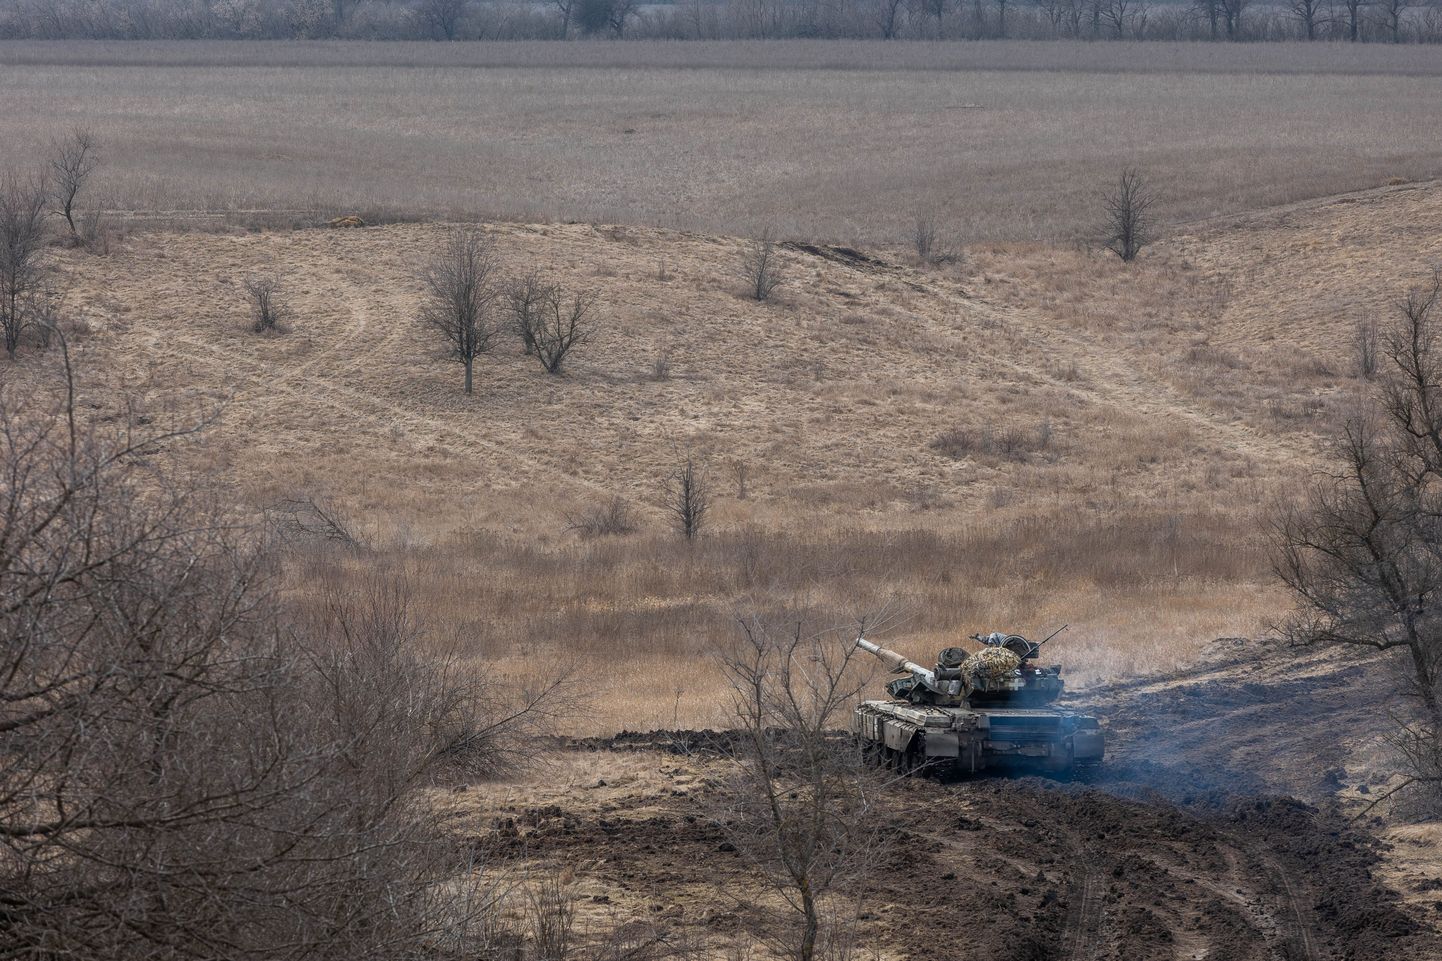 Танк Т-64 1-й танковой бригады Украины на юге Донбасса под Угледаром. Хорошо видны обширные поля, на которых там ведутся бои. Поля окружены узкими рядами деревьев.